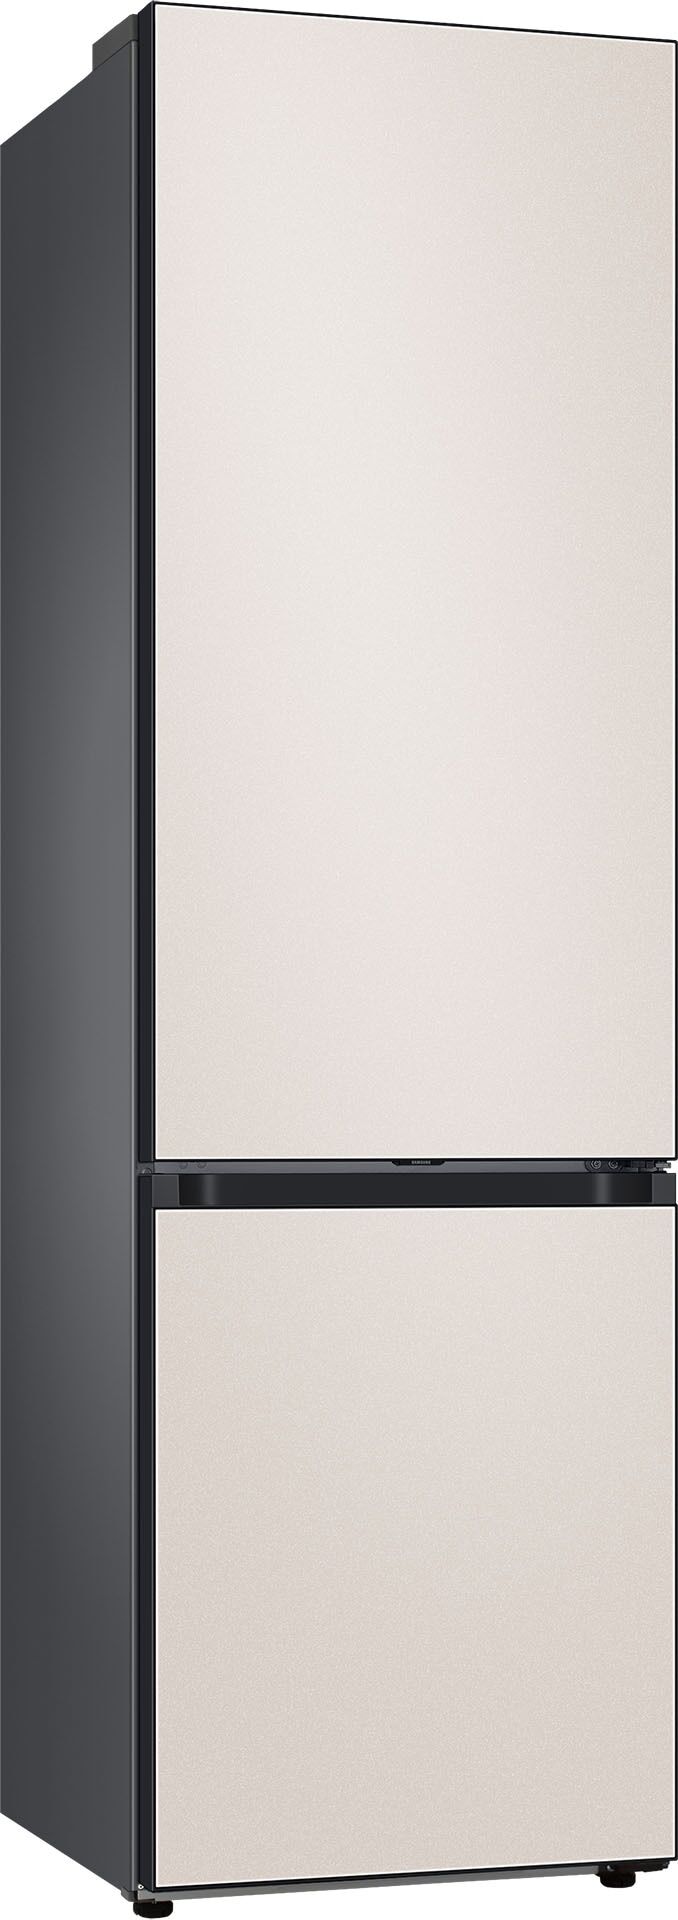 Samsung Kühl-/Gefrierkombination, Bespoke, RL38A6B0DCE, 203 cm hoch, 59,5 breit D (A bis G) Einheitsgröße beige Kühl-/Gefrierkombination Kühl-Gefrierkombinationen Kühlschränke Haushaltsgeräte